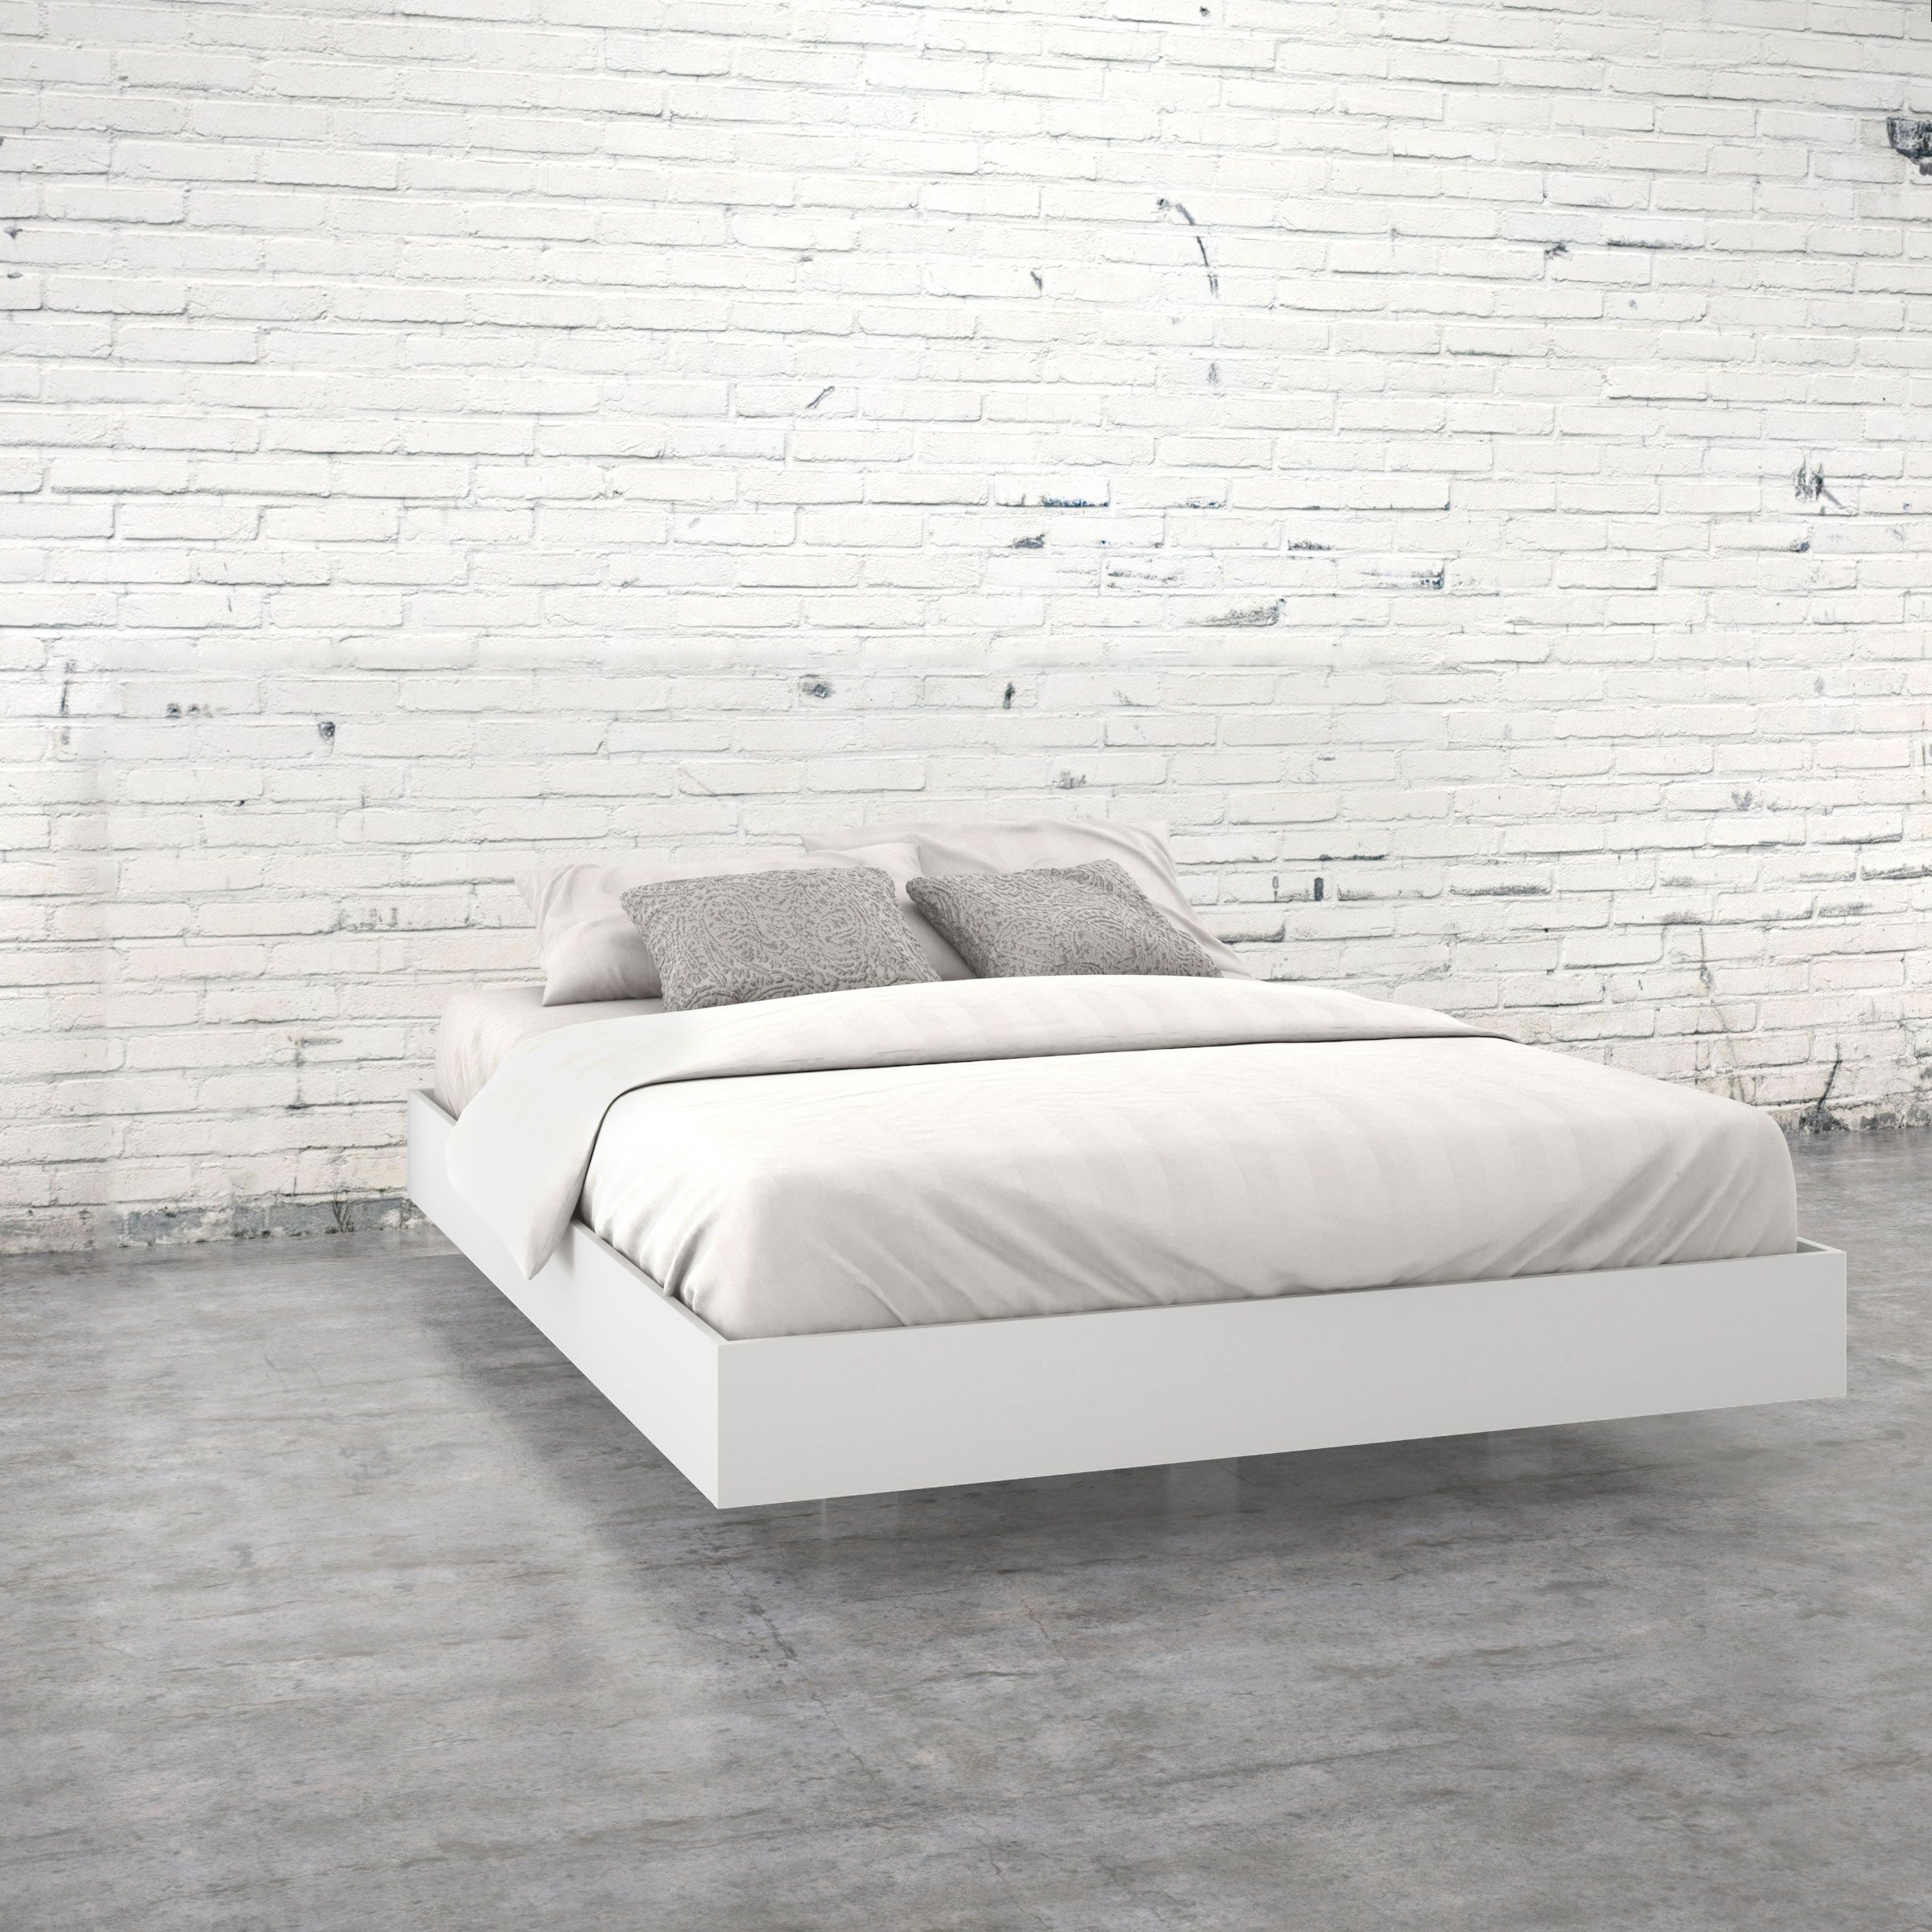 Nexera Nexera Queen Size Platform Bed White Nx 346003 Modern